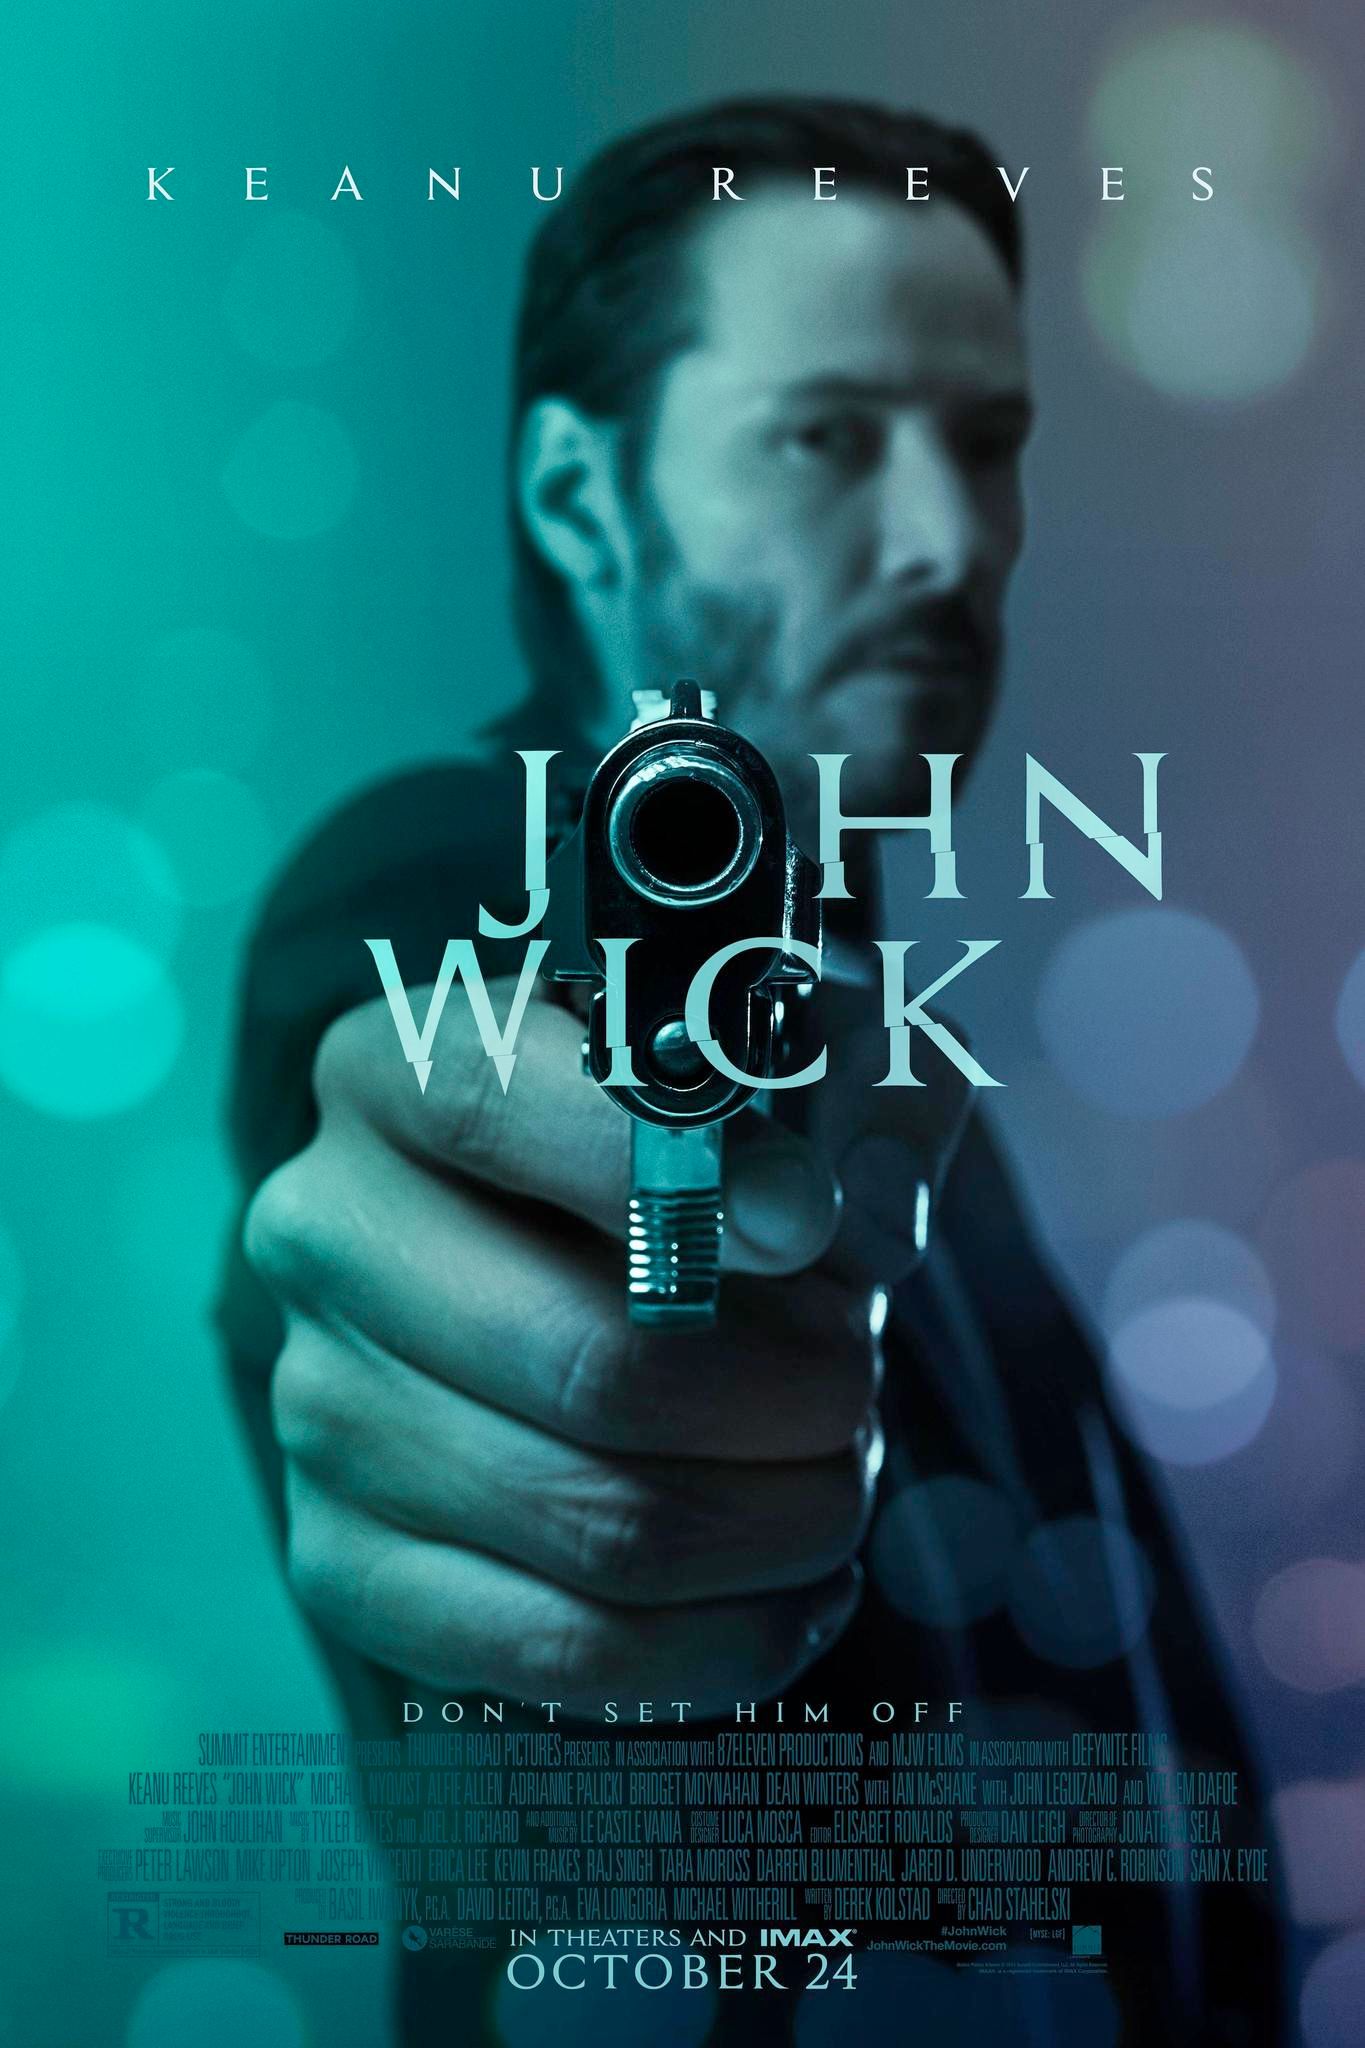 Keanu Reeves in John Wick (2014) film poster